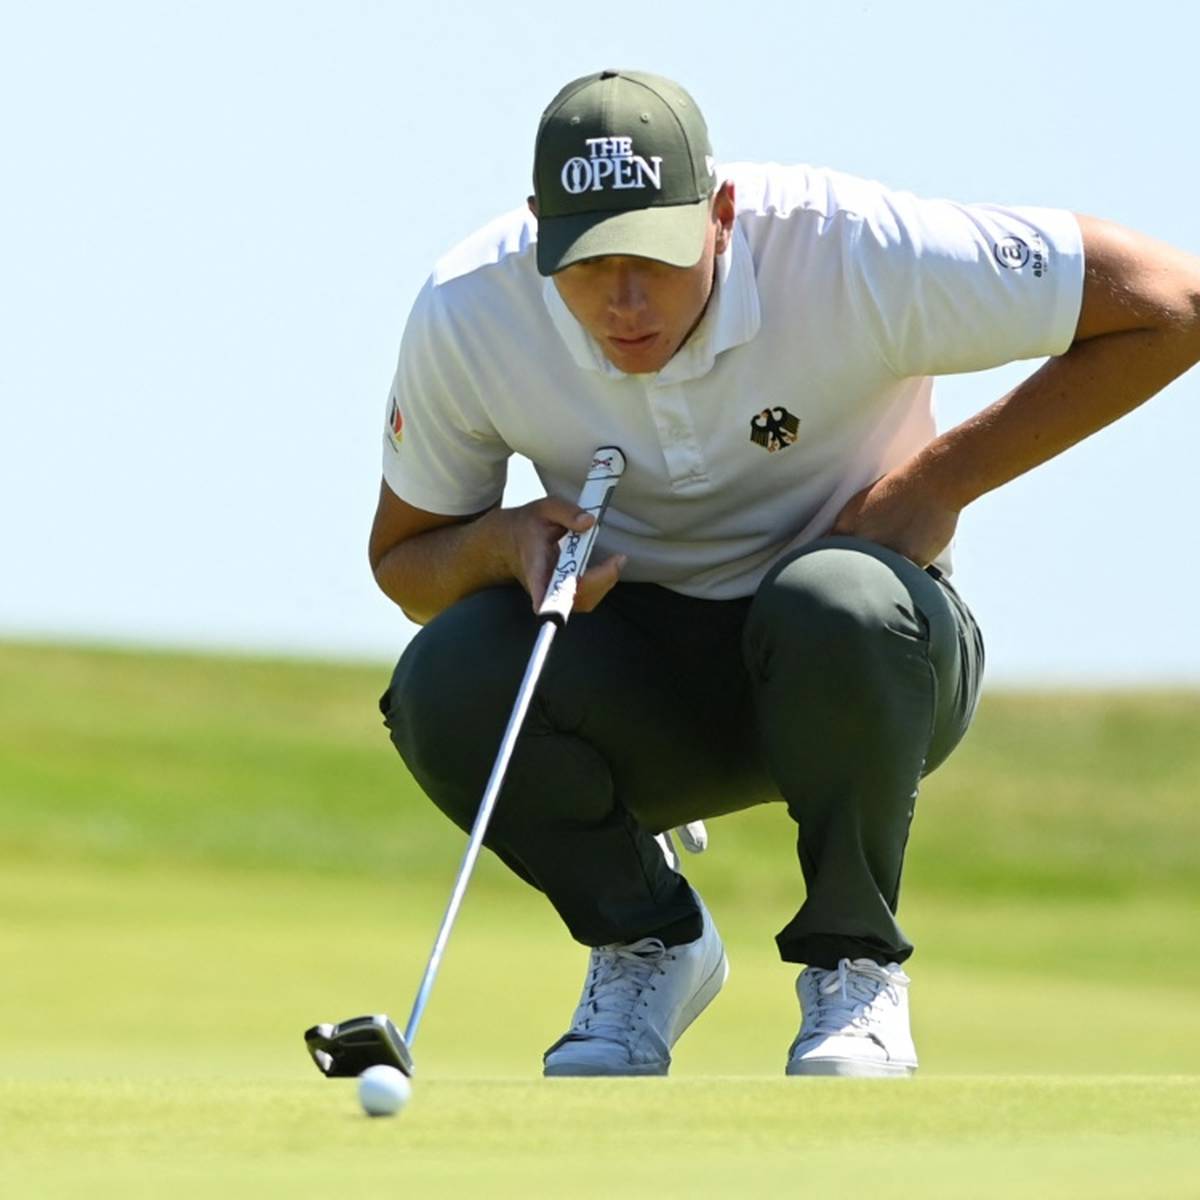 Der Golf-Profi Matthias Schmid hat beim Europa-Tour-Turnier im walisischen Newport sein drittes Top-10-Ergebnis in der laufenden Saison verbucht.